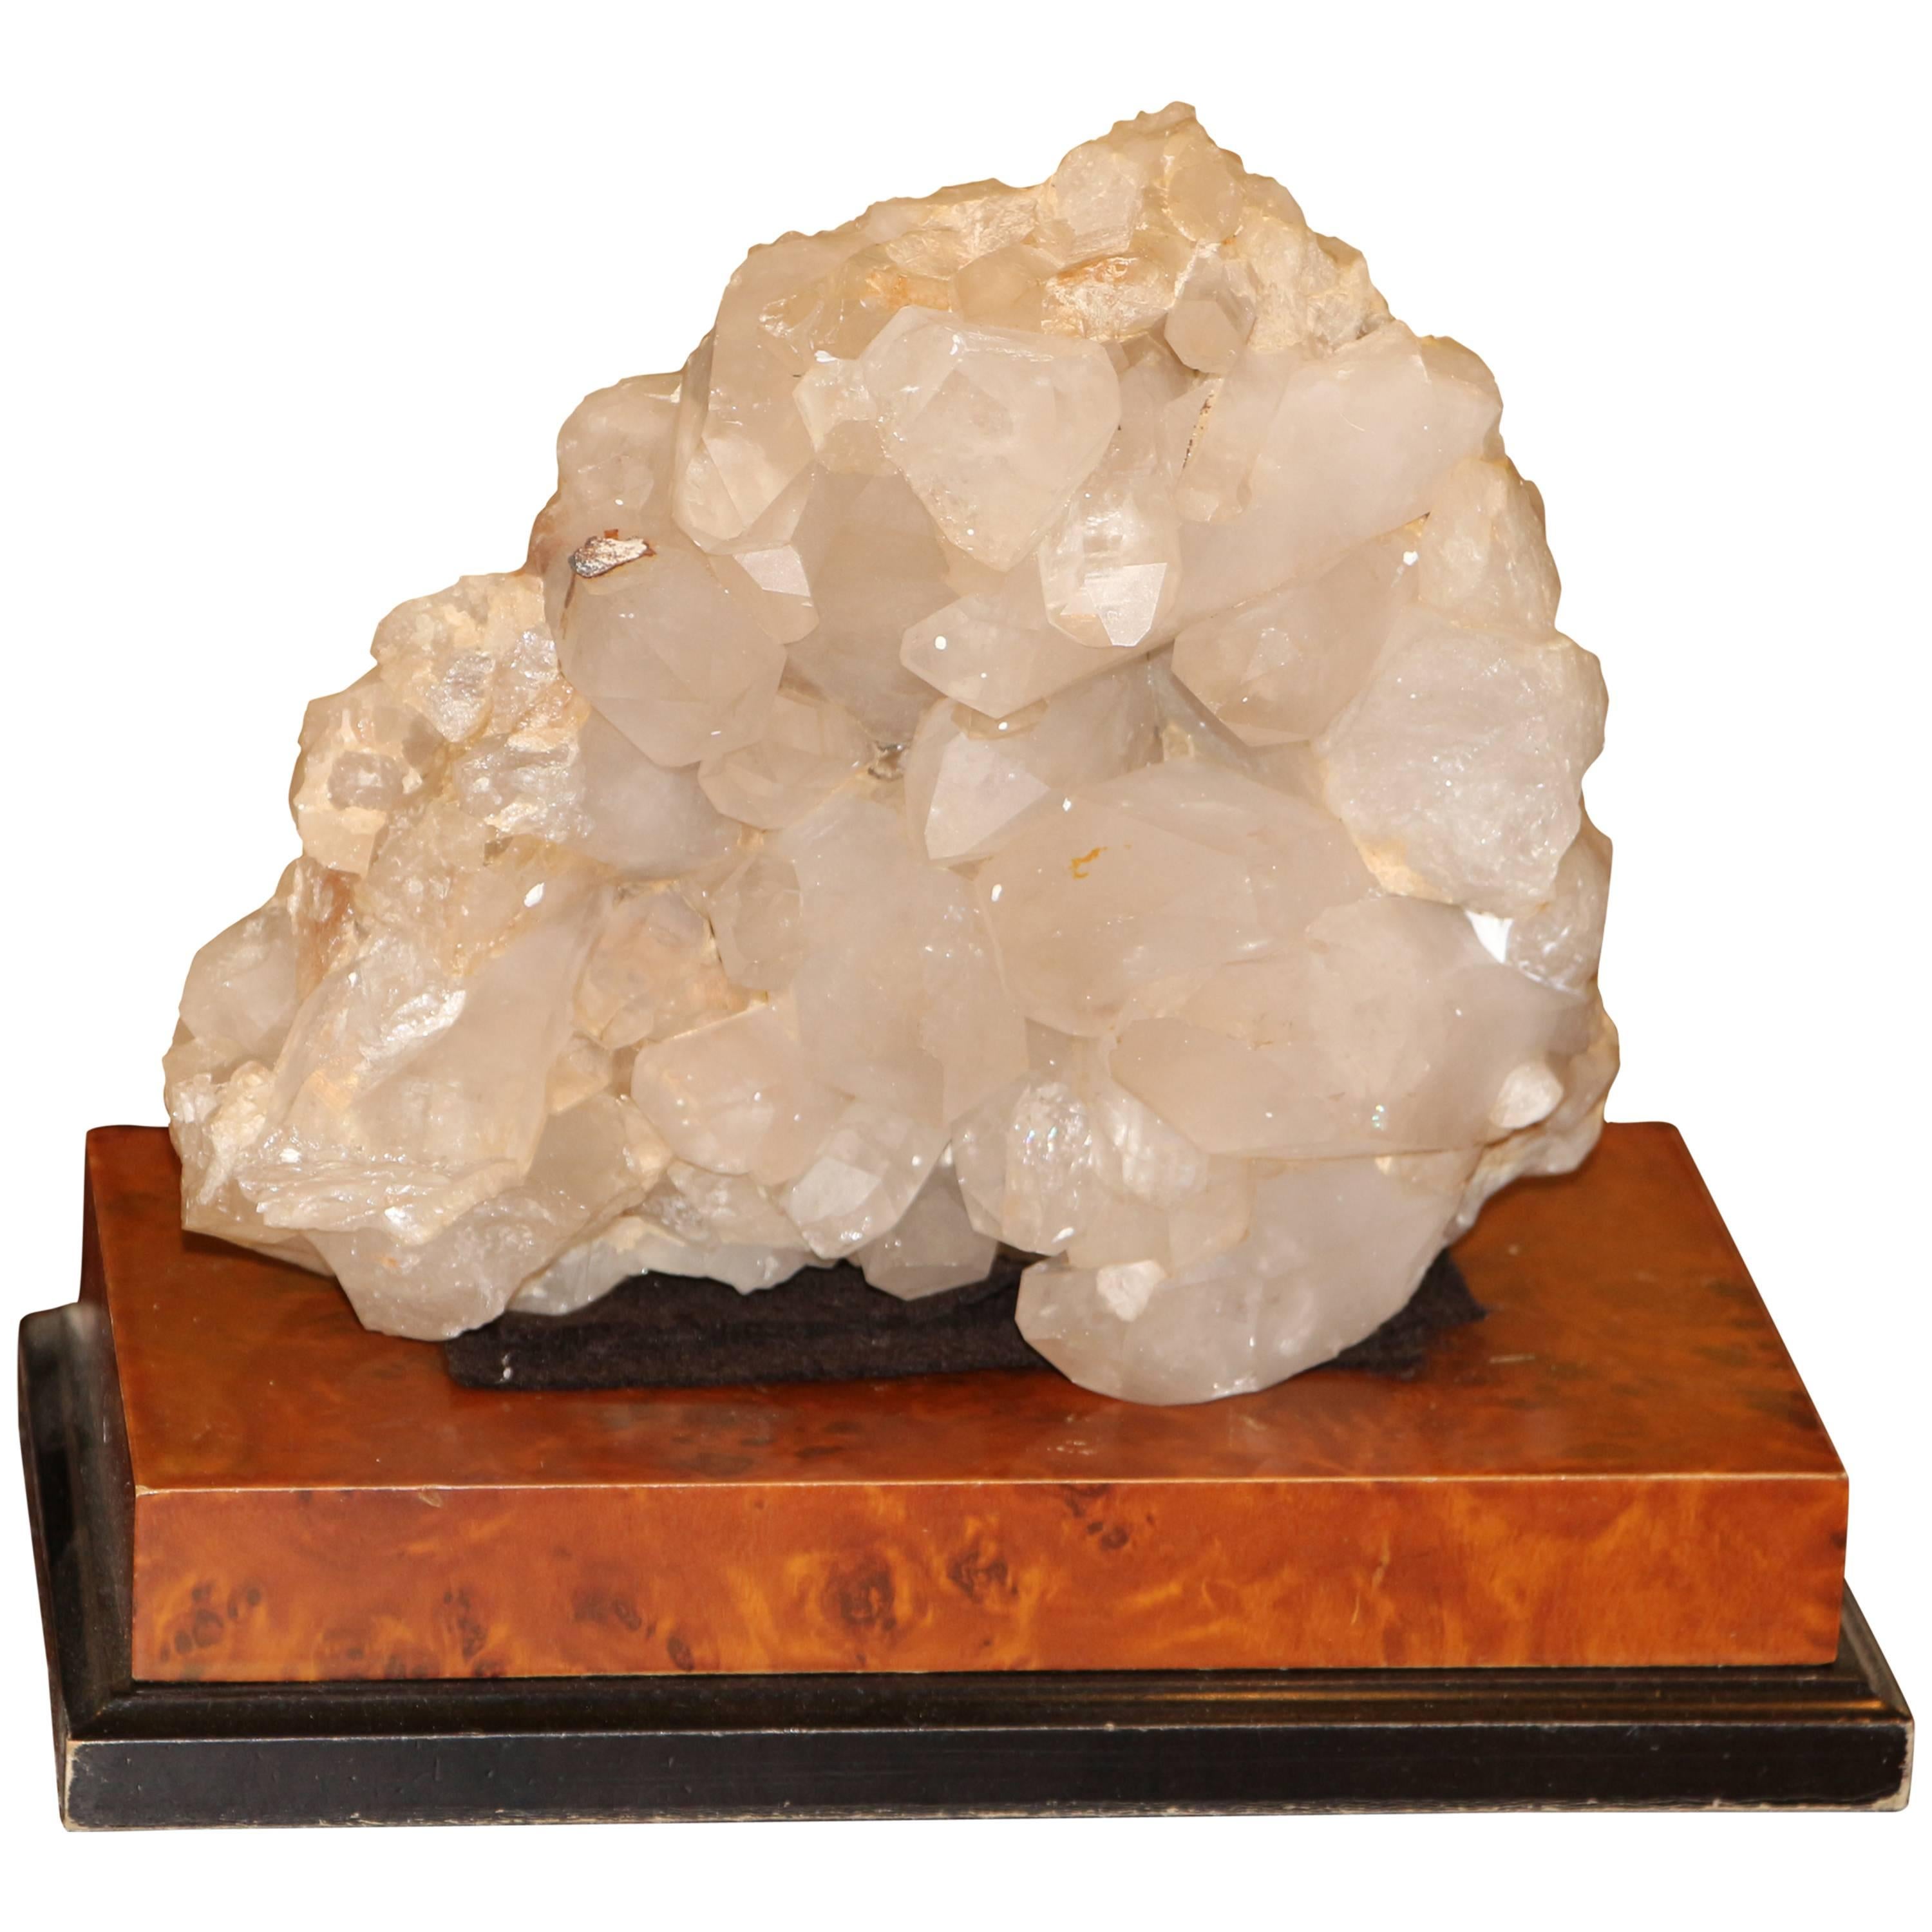 Gran espécimen de cristal de cuarzo sobre una base independiente de madera recubierta de cuero